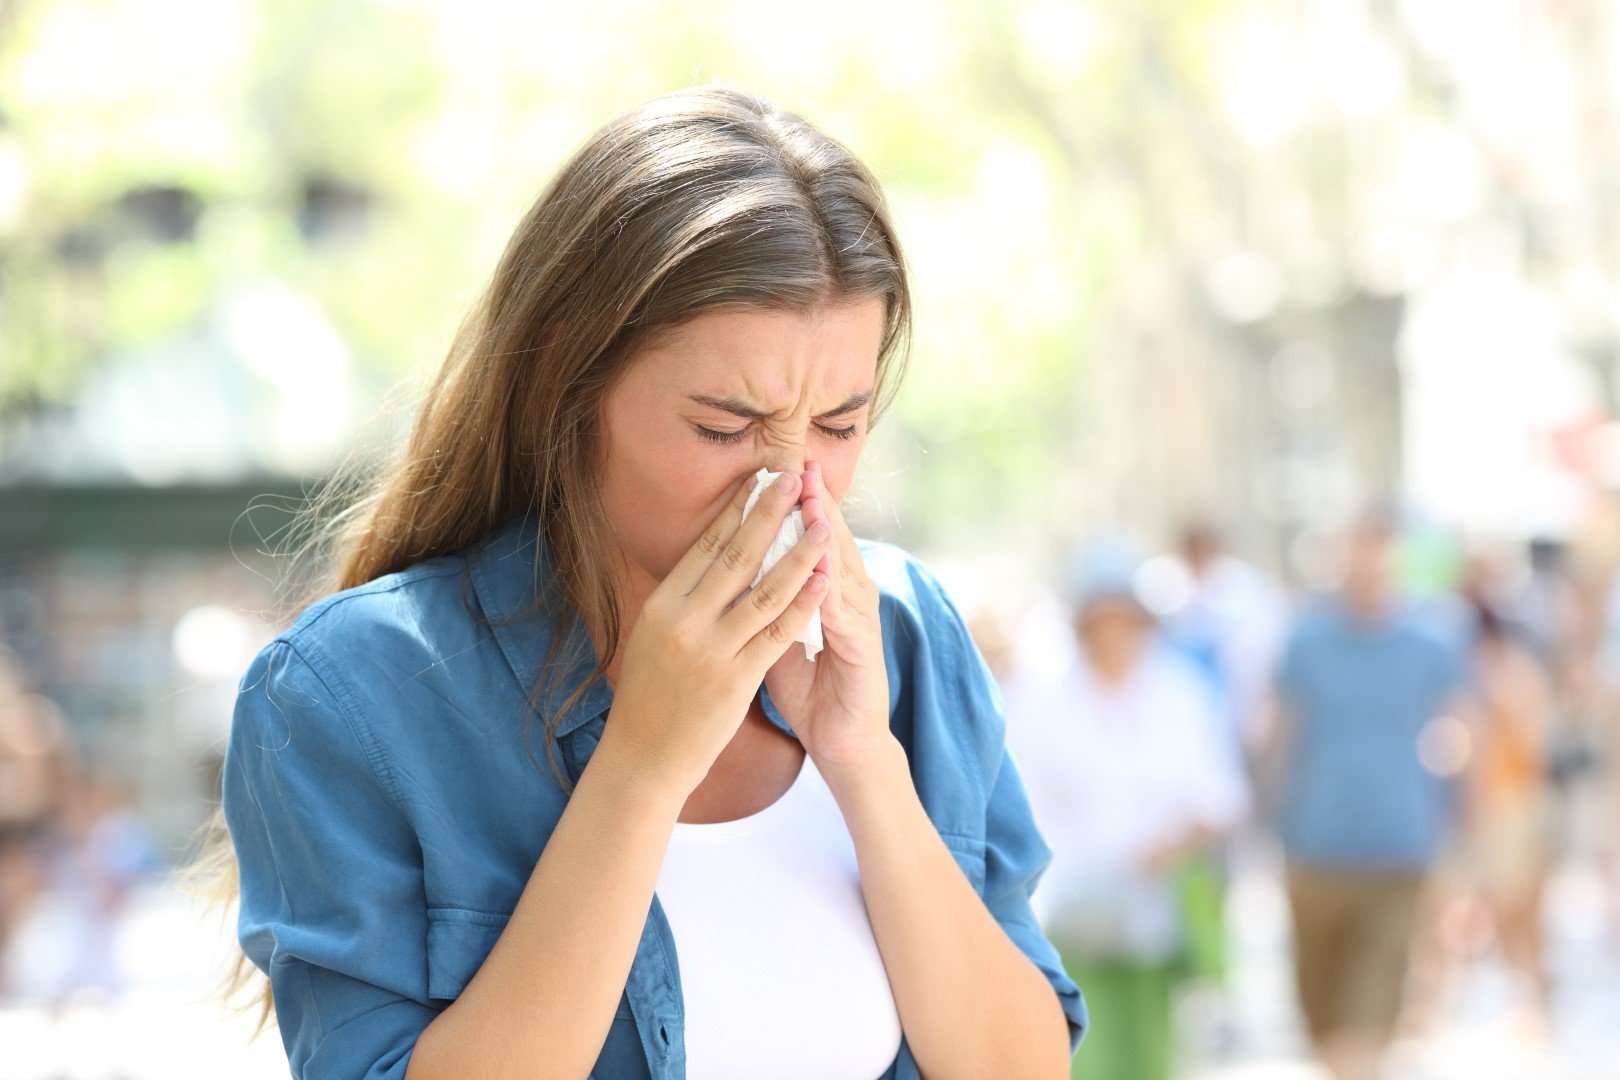 What Causes Spring Seasonal Allergies?